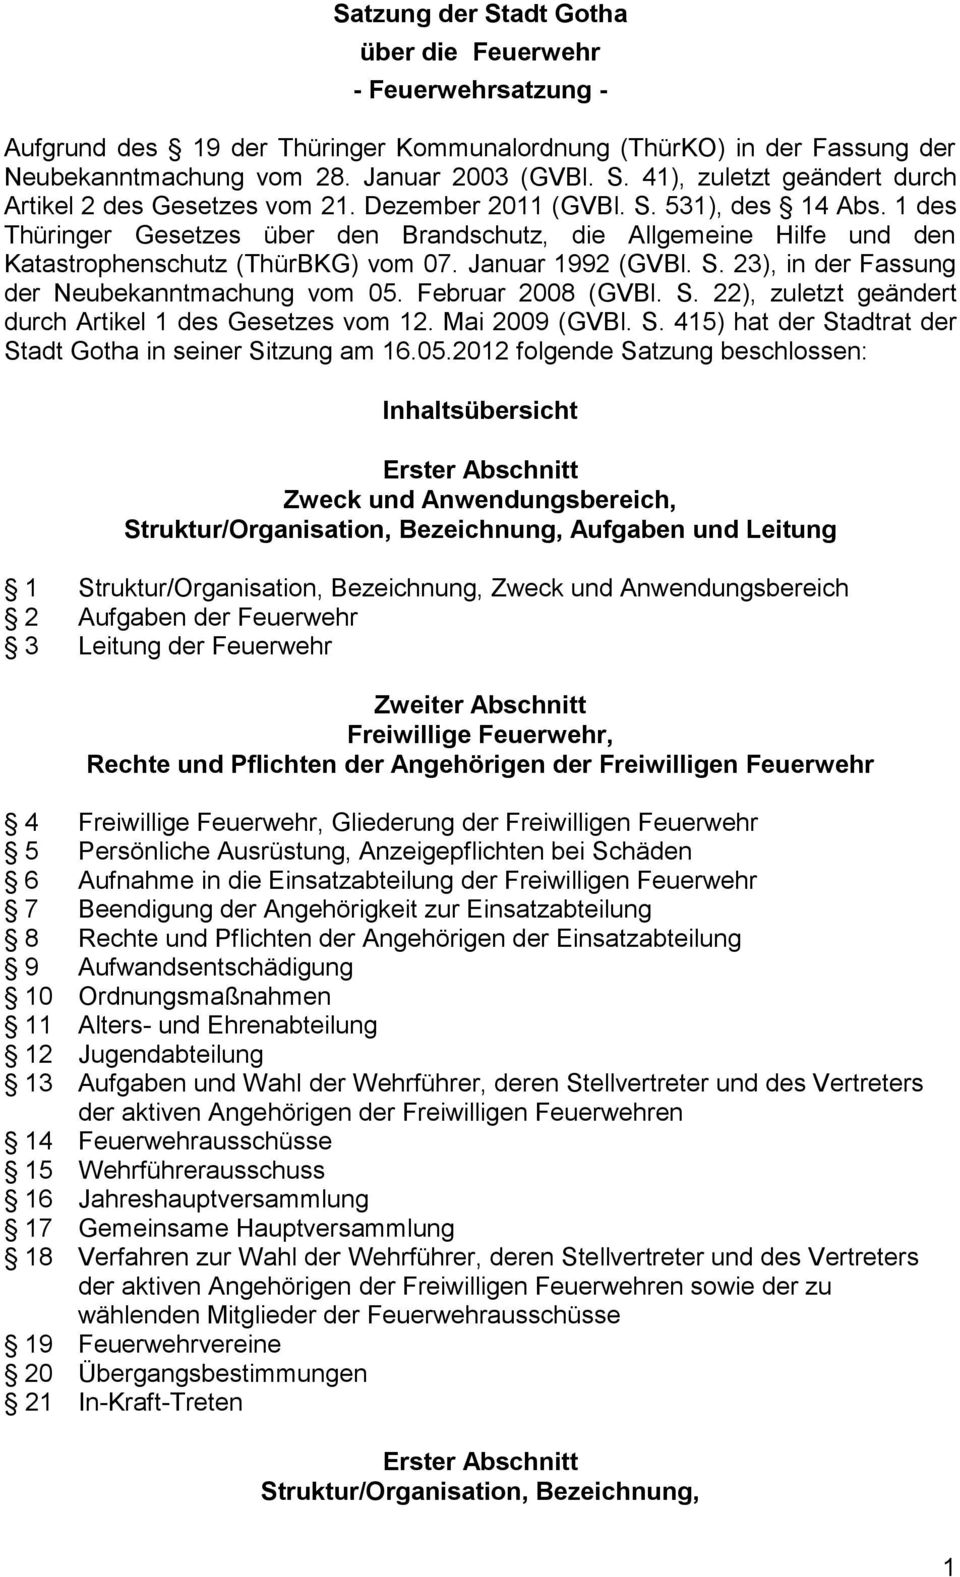 Februar 2008 (GVBl. S. 22), zuletzt geändert durch Artikel 1 des Gesetzes vom 12. Mai 2009 (GVBl. S. 415) hat der Stadtrat der Stadt Gotha in seiner Sitzung am 16.05.